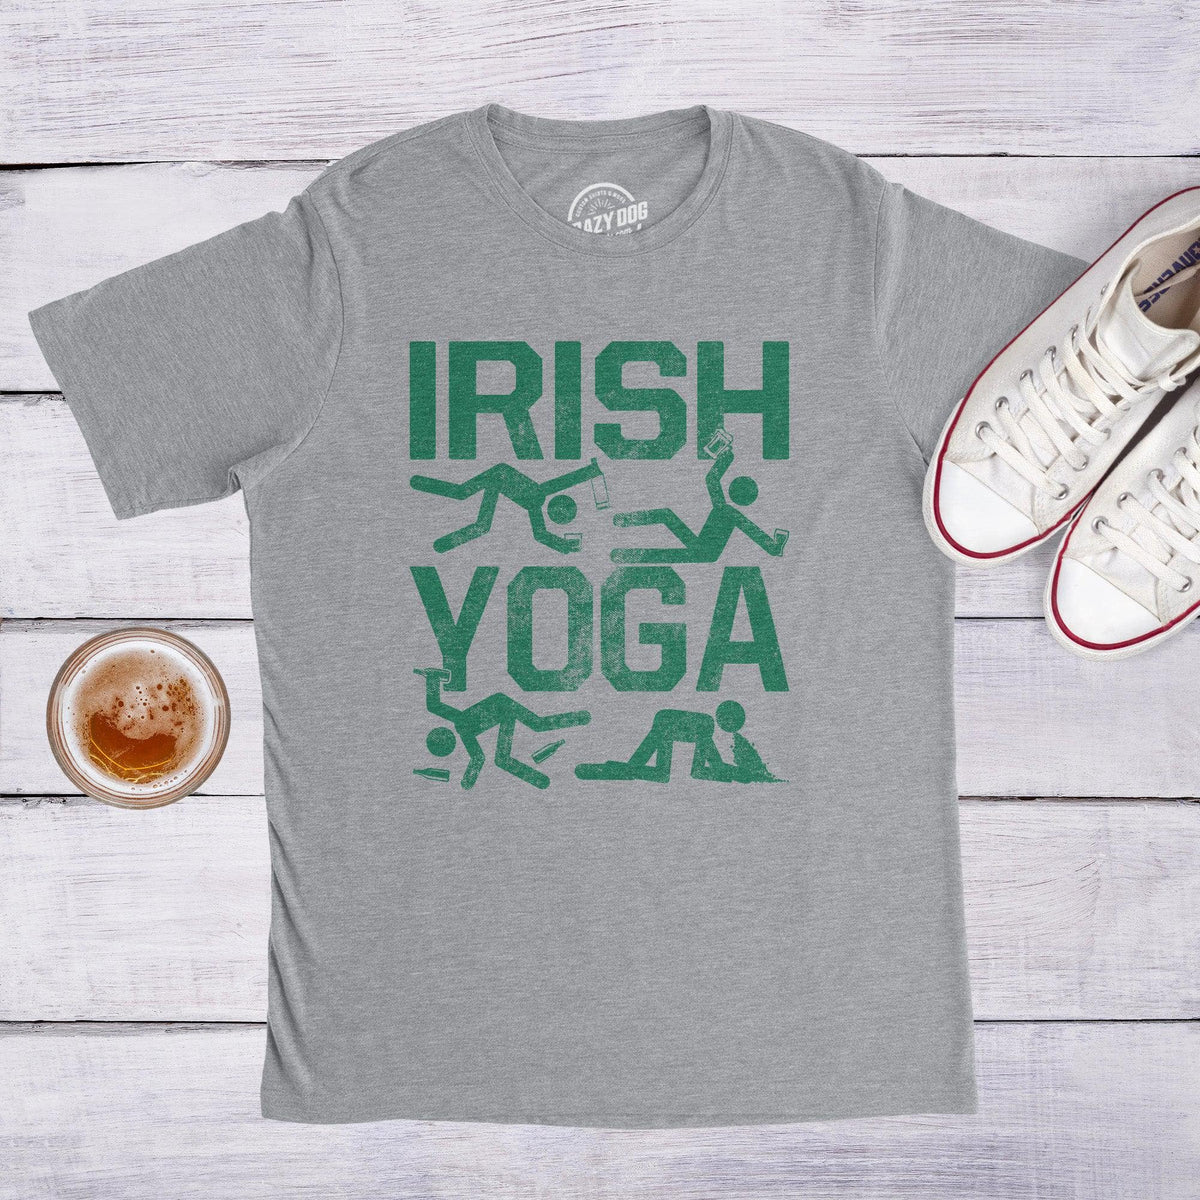 Irish Yoga T-Shirts, Unique Designs